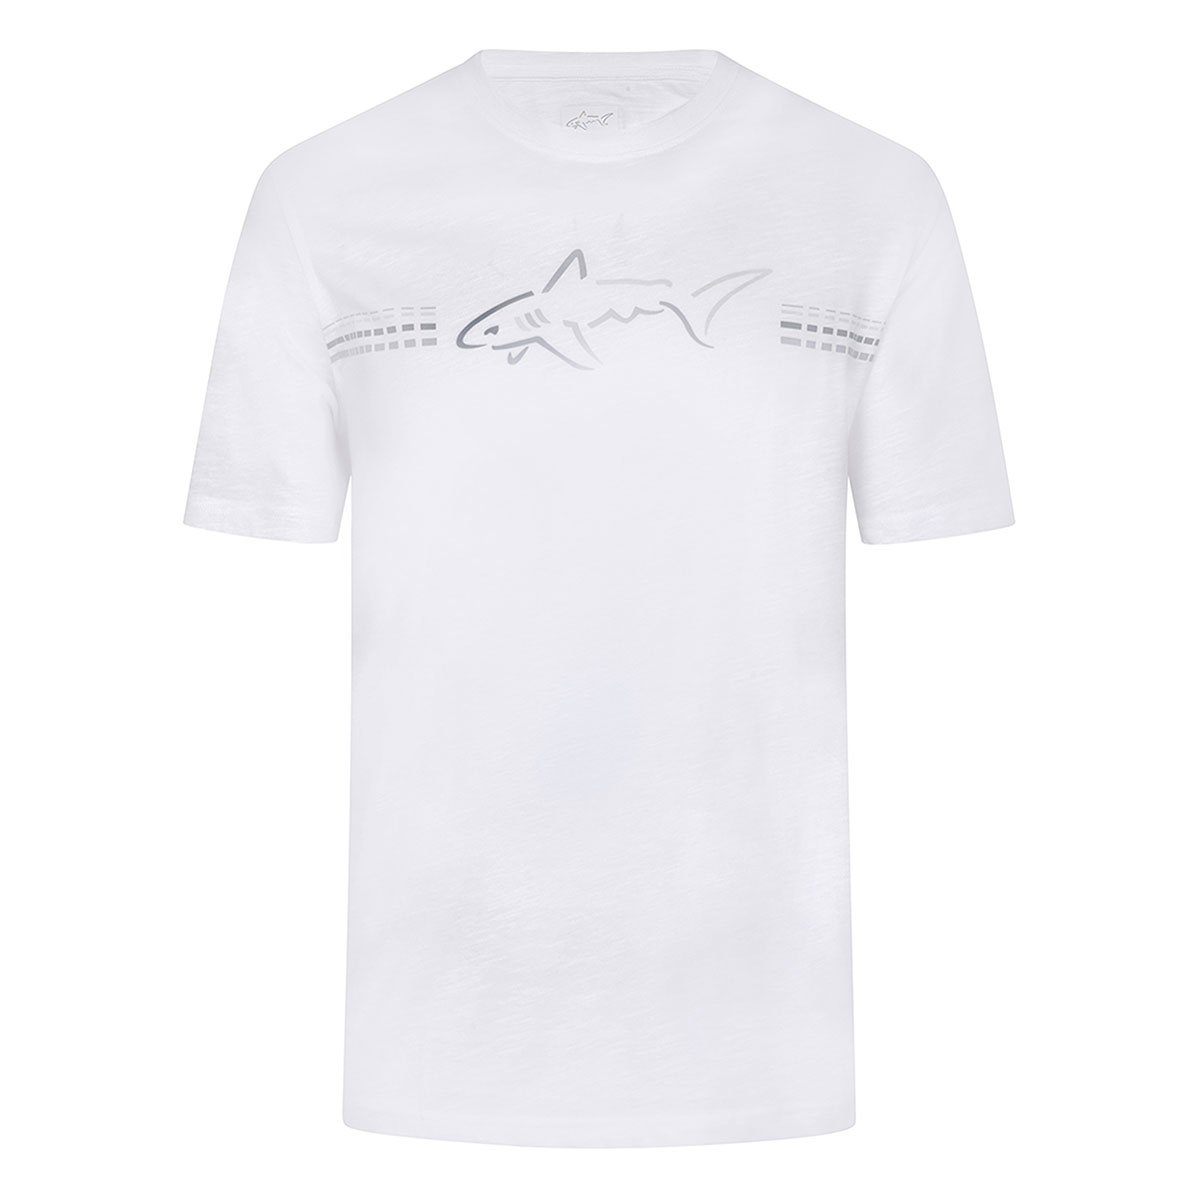 Greg Norman Shark Logo T-shirt from american golf